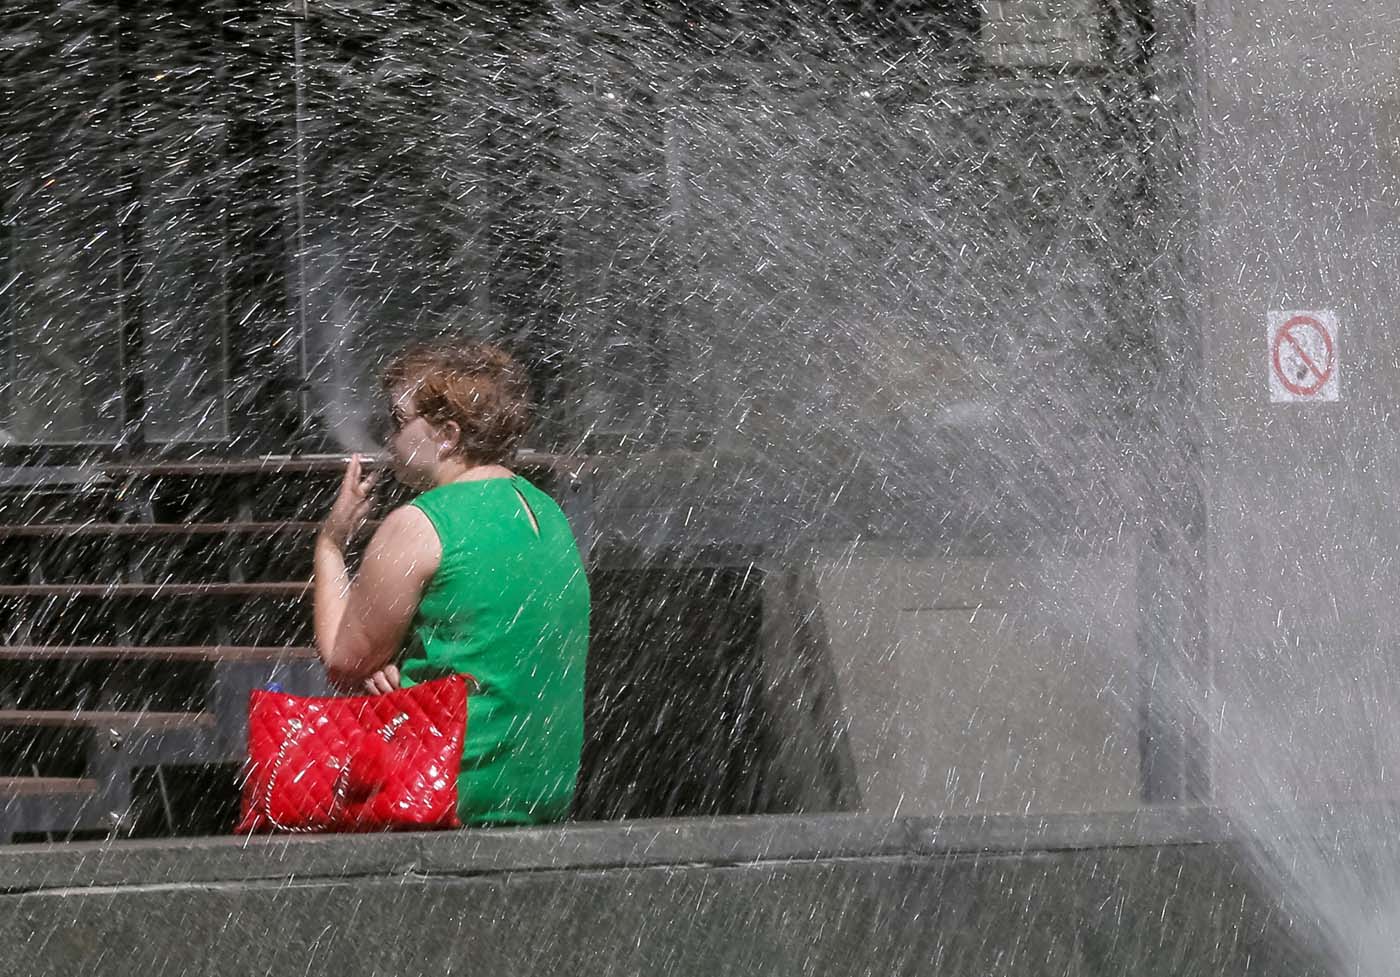 En Holanda se registraron 400 muertes más que el promedio durante última ola de calor